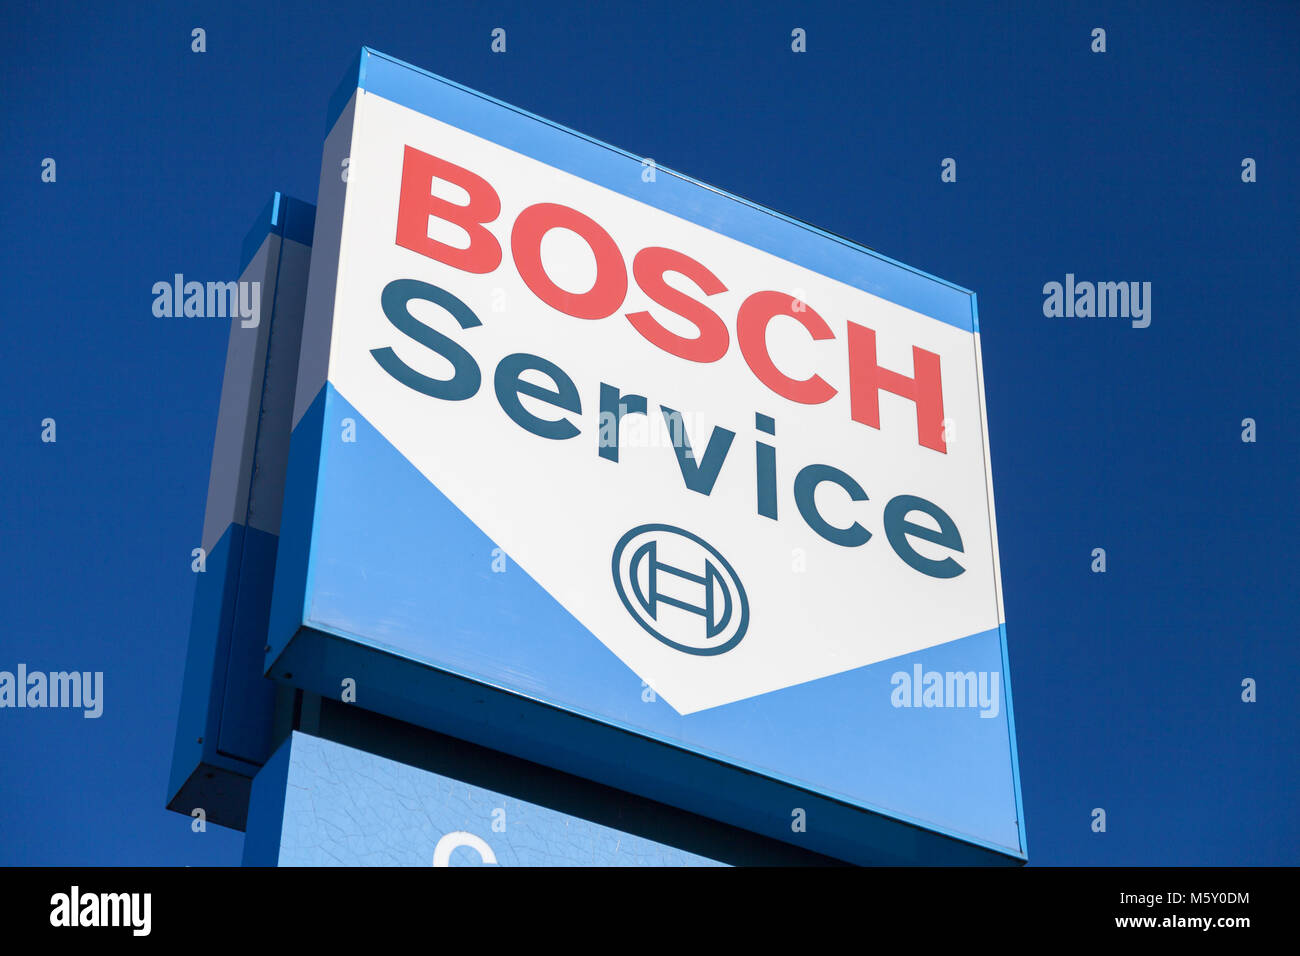 Fürth / Alemania - 25 de febrero de 2018: el logotipo de Bosch cerca de un edificio de servicio de Bosch. La multinacional alemana Bosch es una empresa de electrónica e ingeniería él Foto de stock